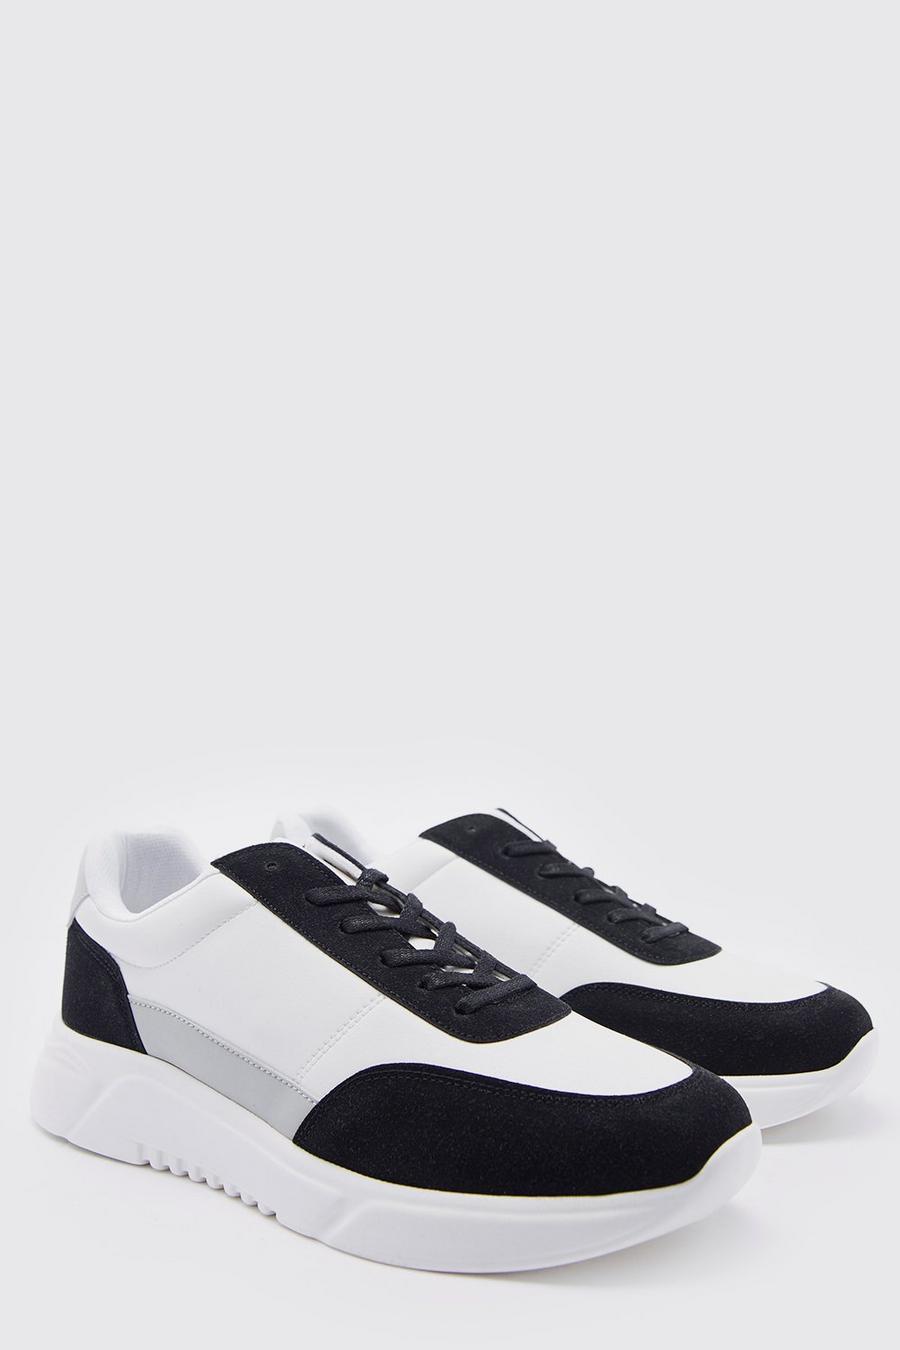 Zapatillas deportivas con panel de cuero sintético, Black negro image number 1